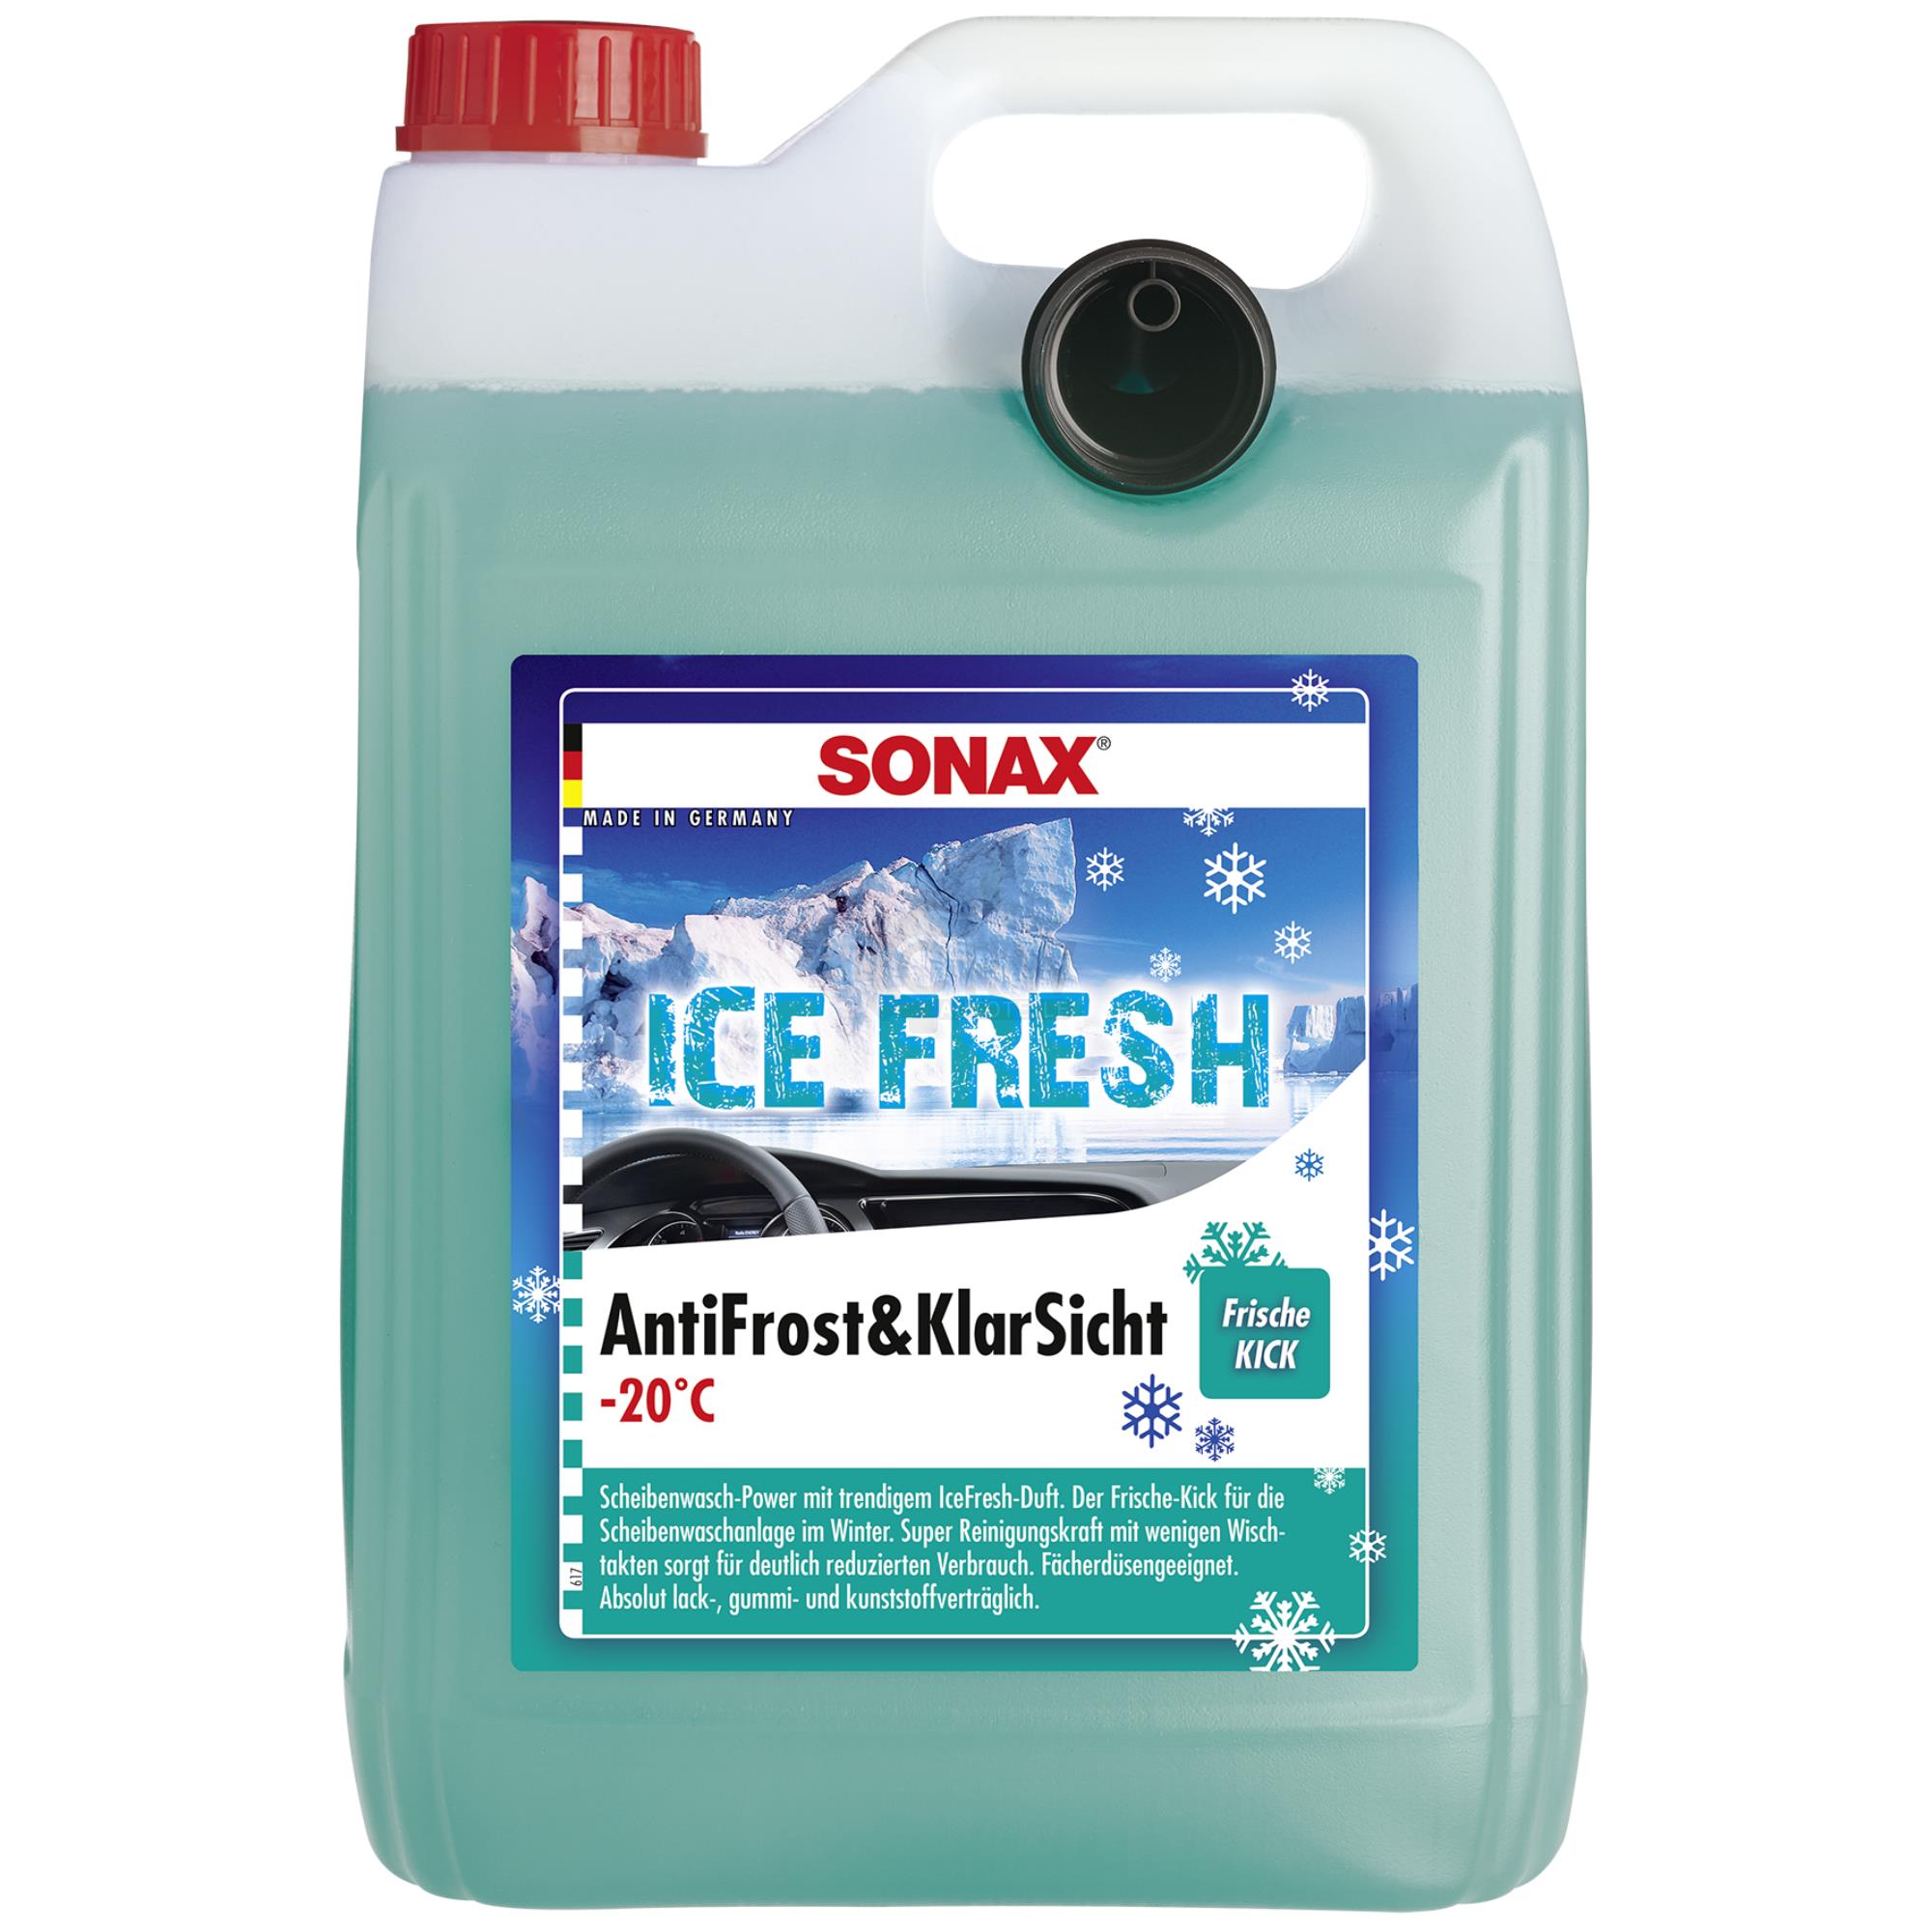 SONAX 01335410 AntiFrost&KlarSicht bis -20°C IceFresh Frostschutz 5 Liter